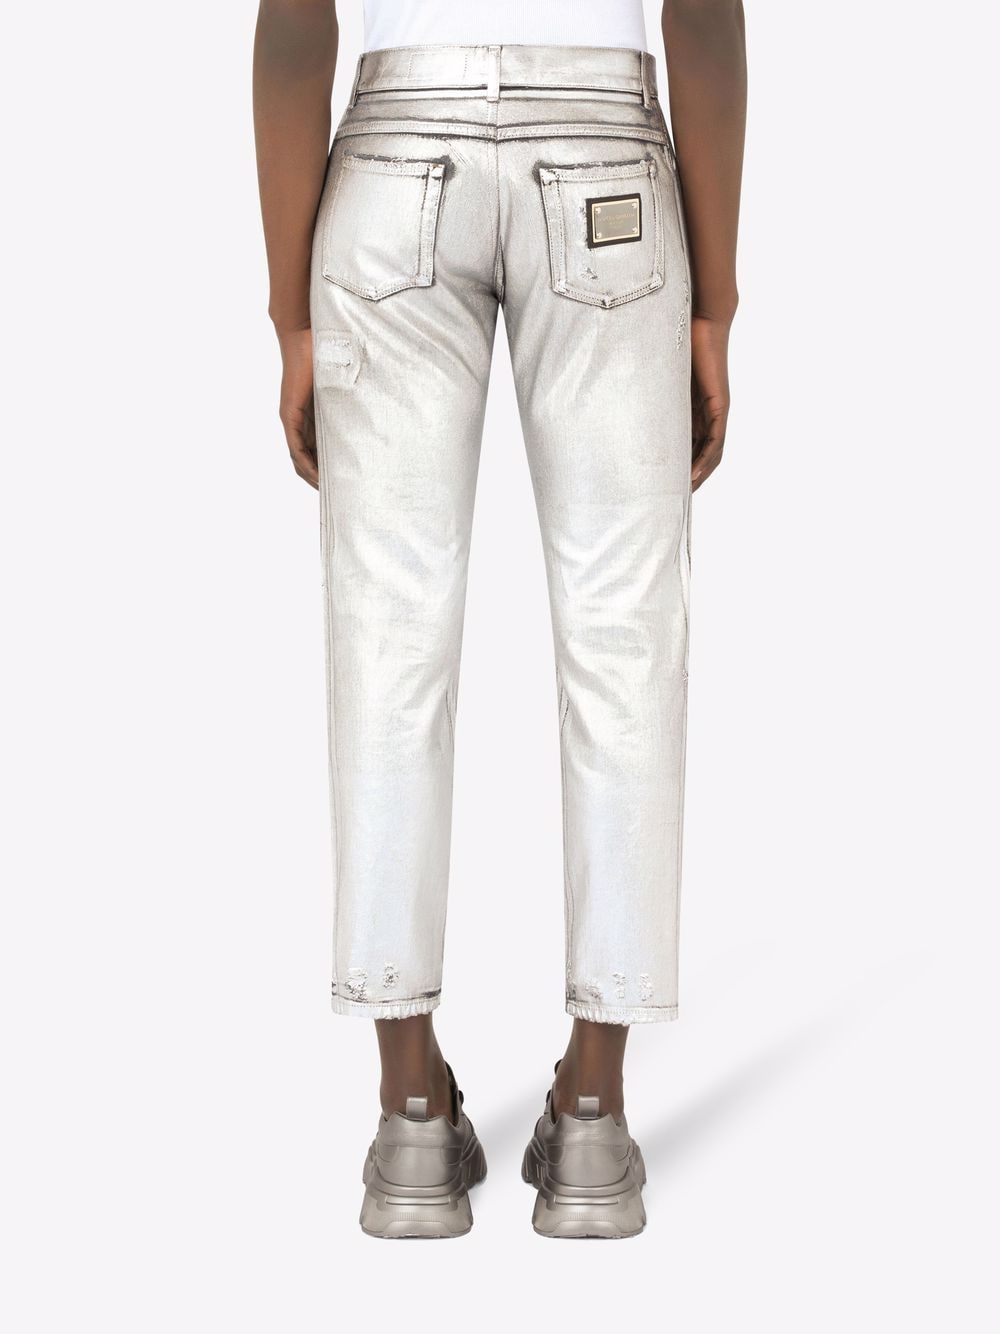 фото Dolce & gabbana укороченные джинсы с эффектом потертости